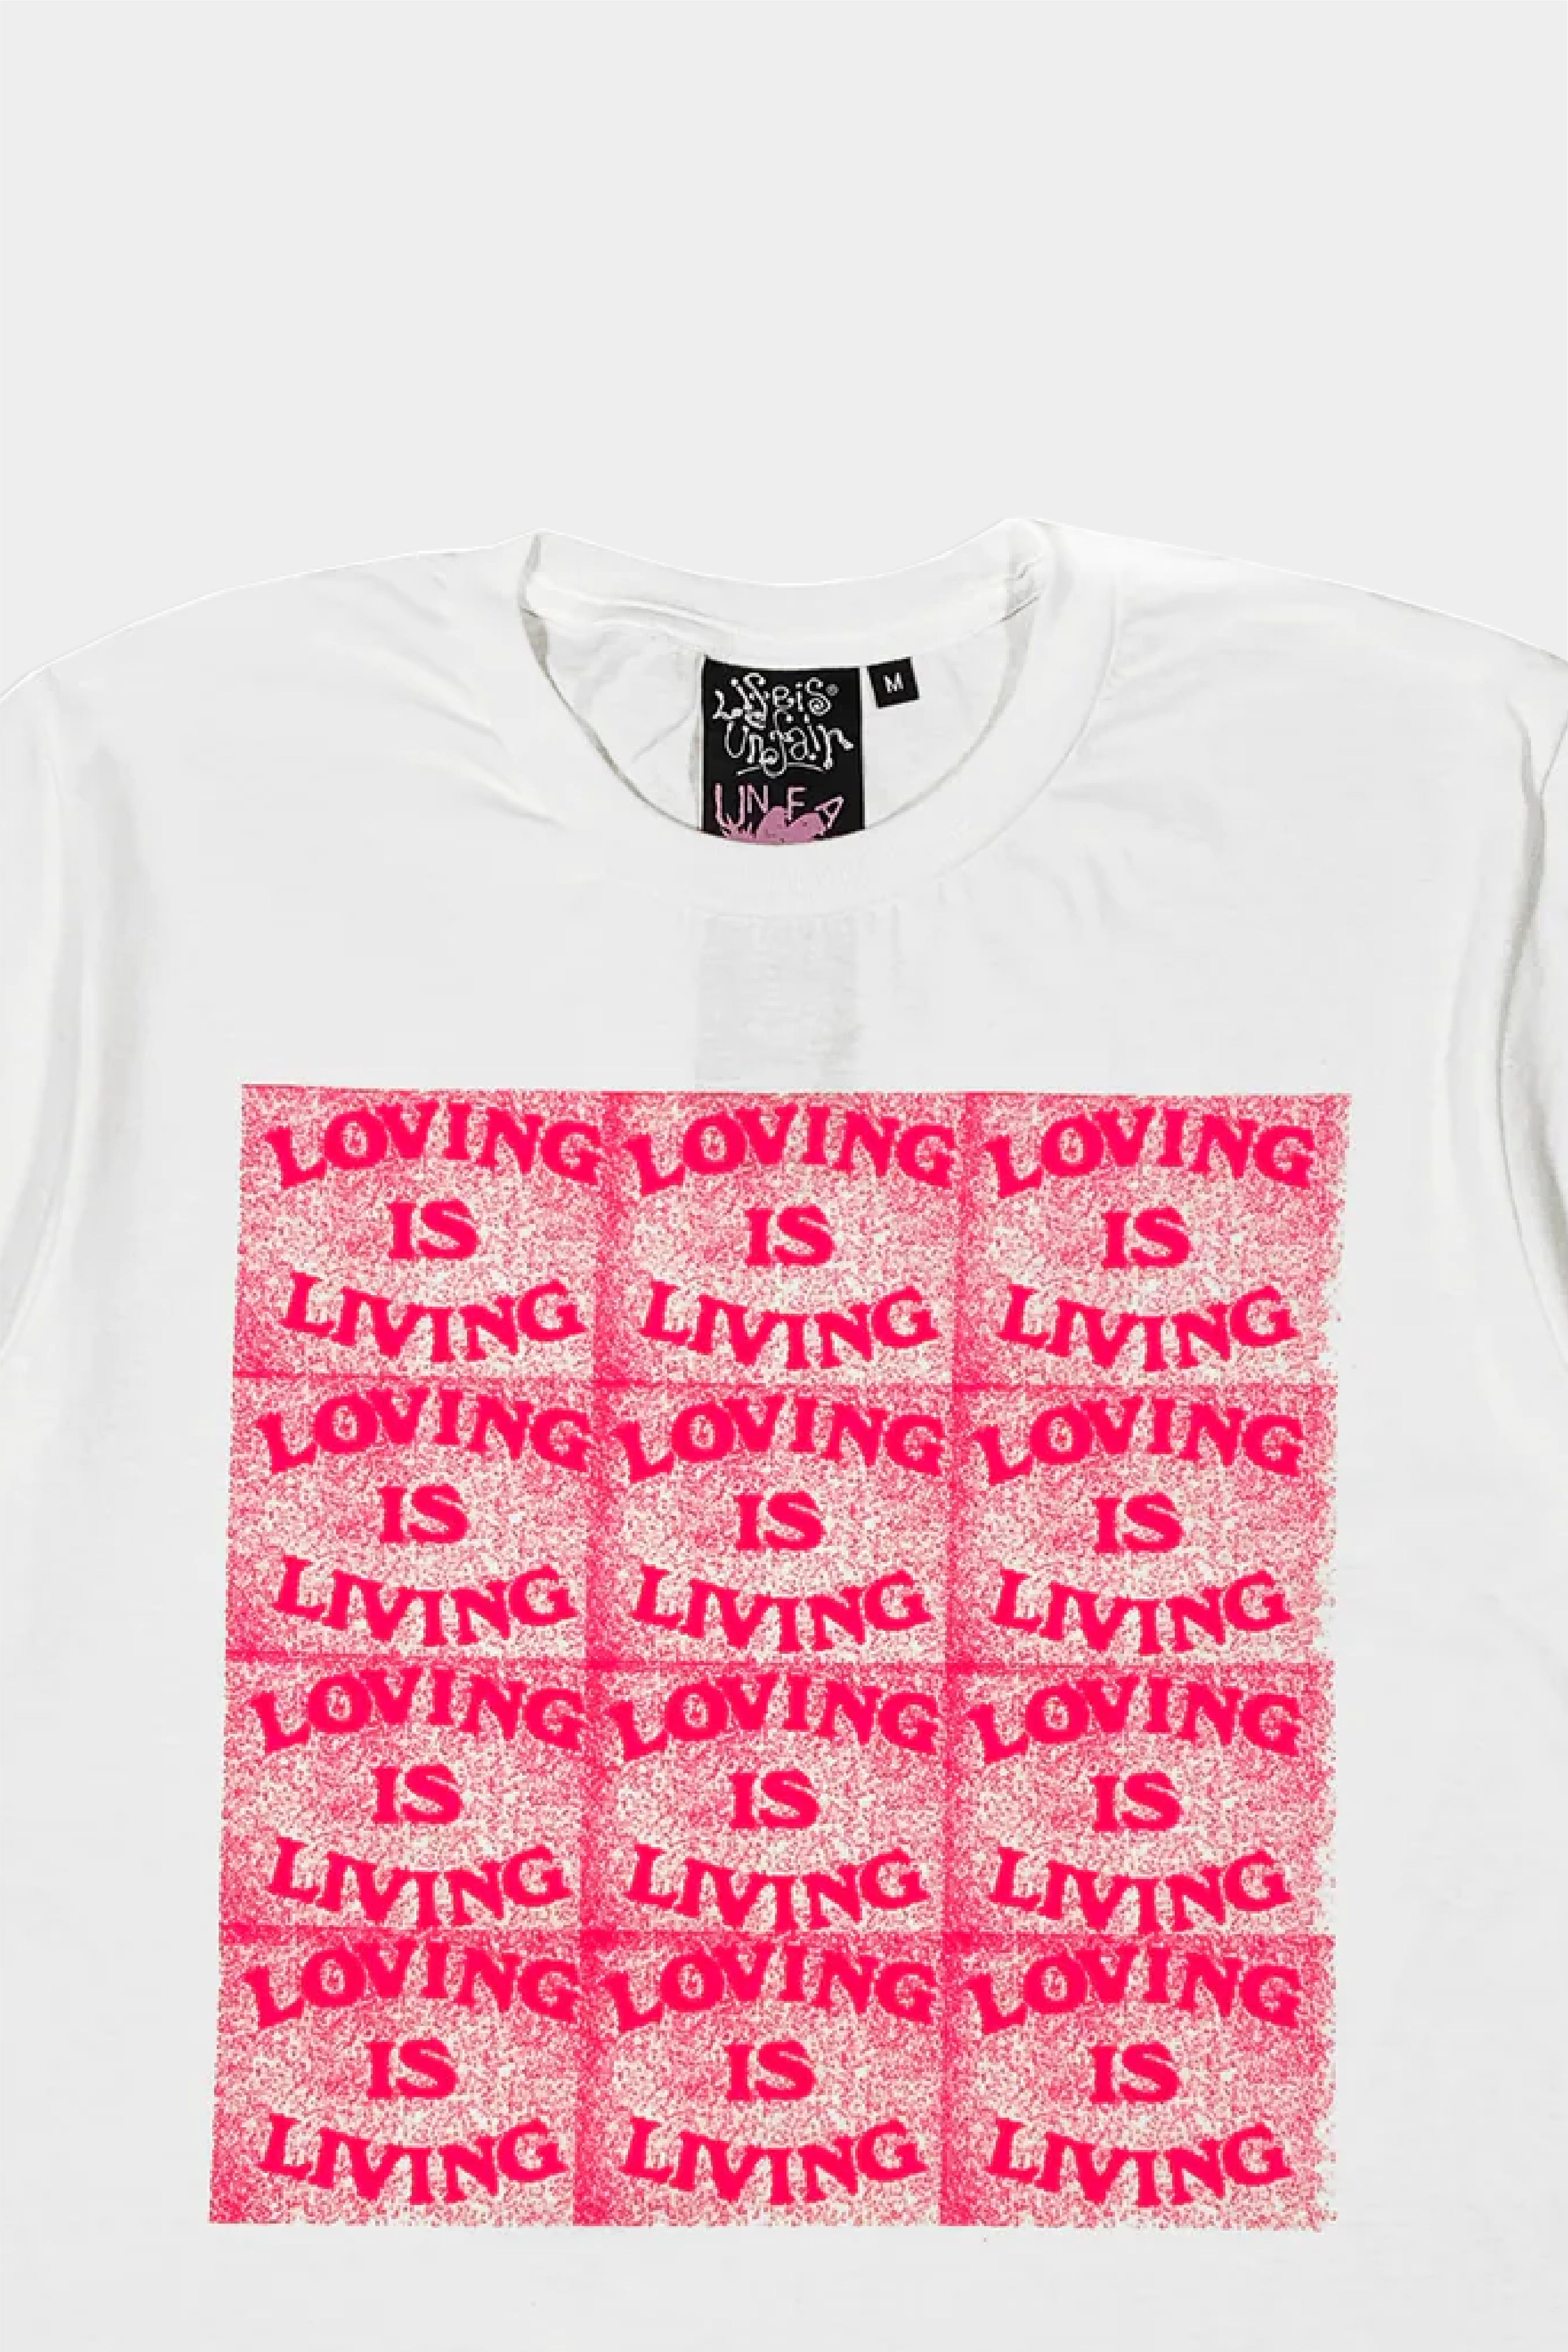 Selectshop FRAME - LIFE IS UNFAIR Togetherness T-Shirt T-Shirts Concept Store Dubai